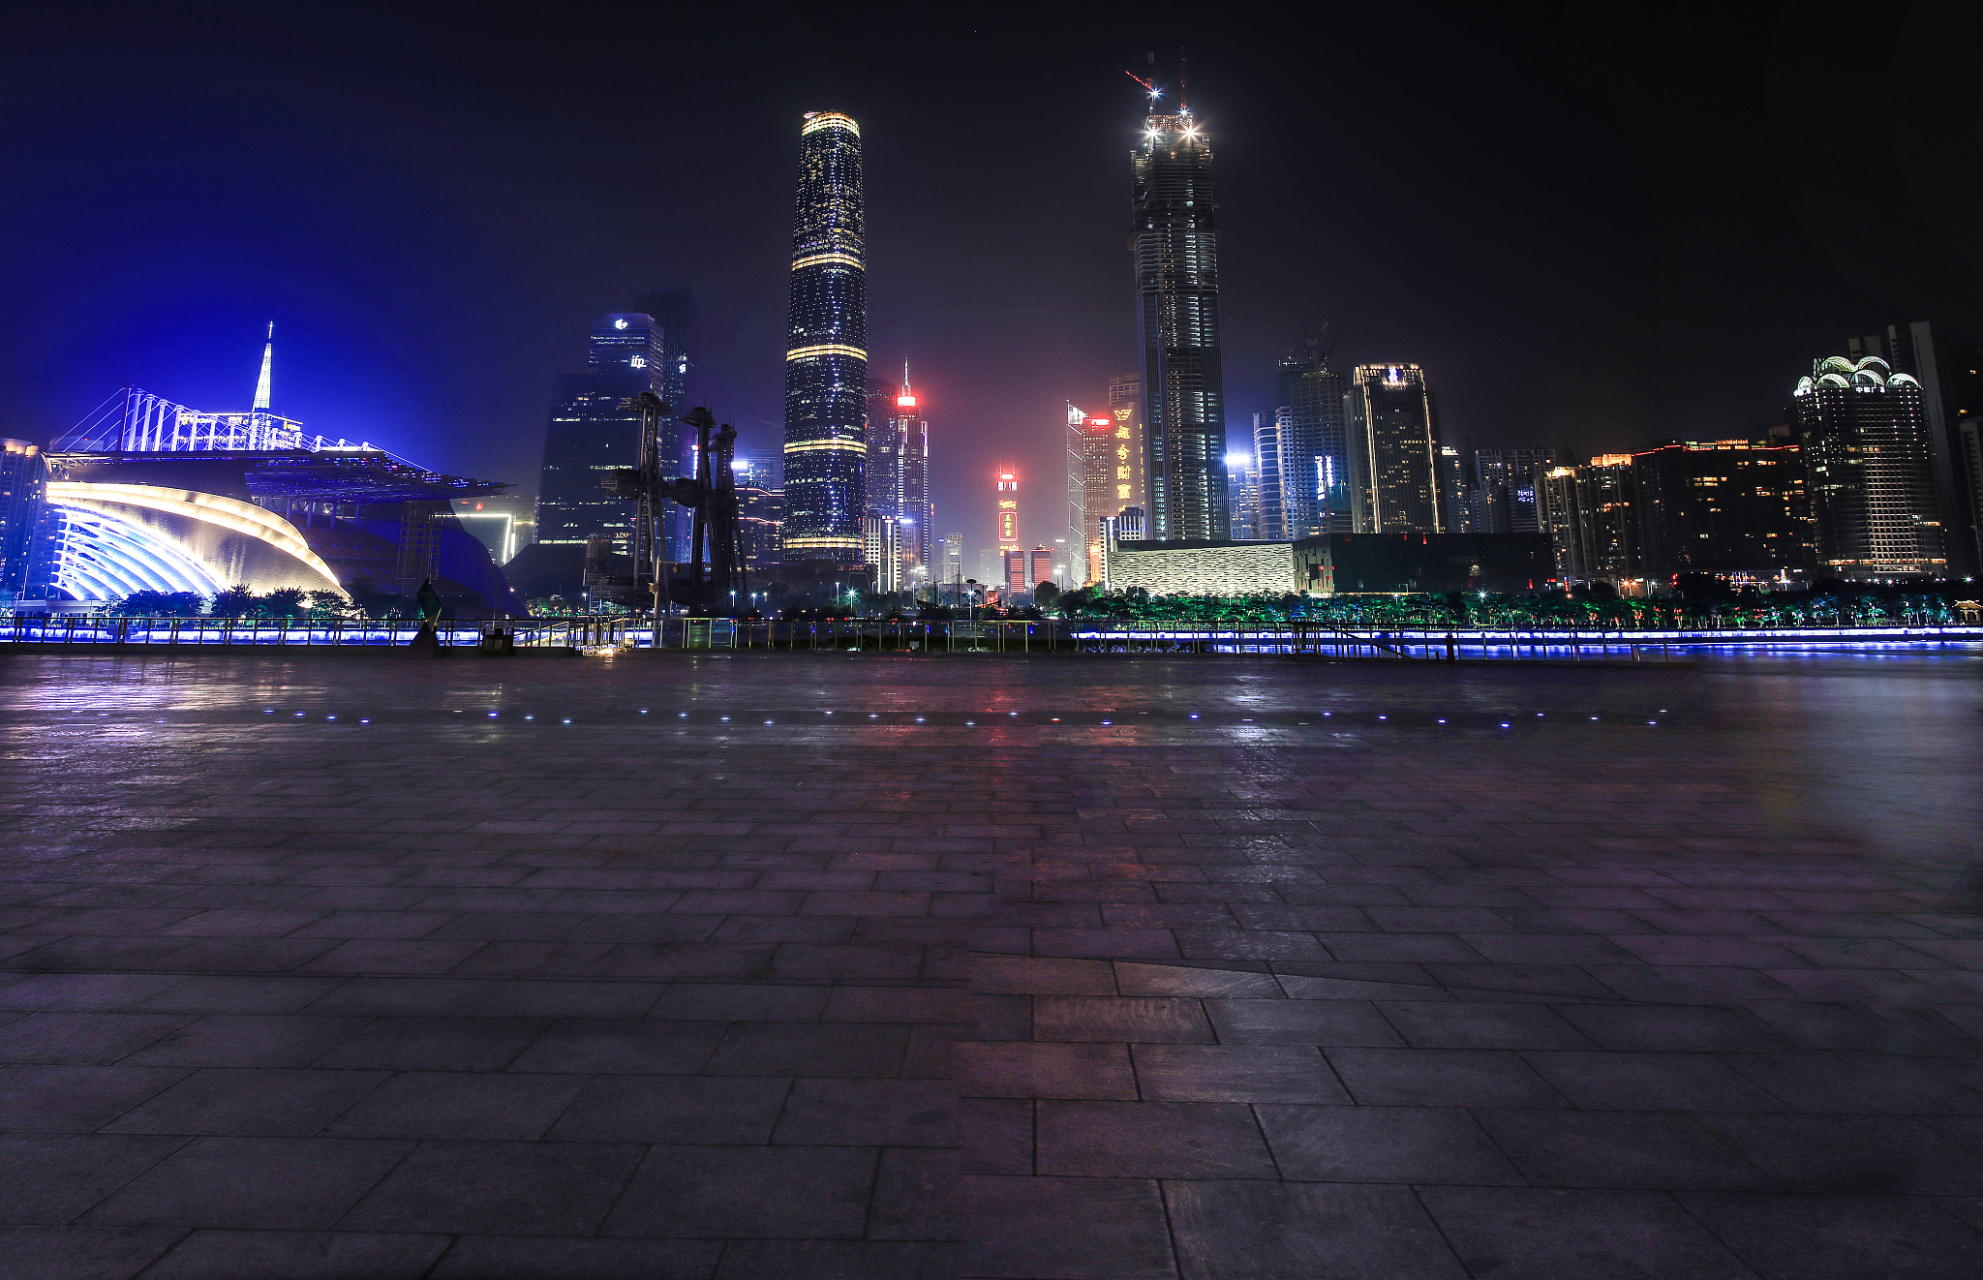 广东珠江夜游,位于广州市越秀区,是一条集观光,娱乐于一体的游船线路